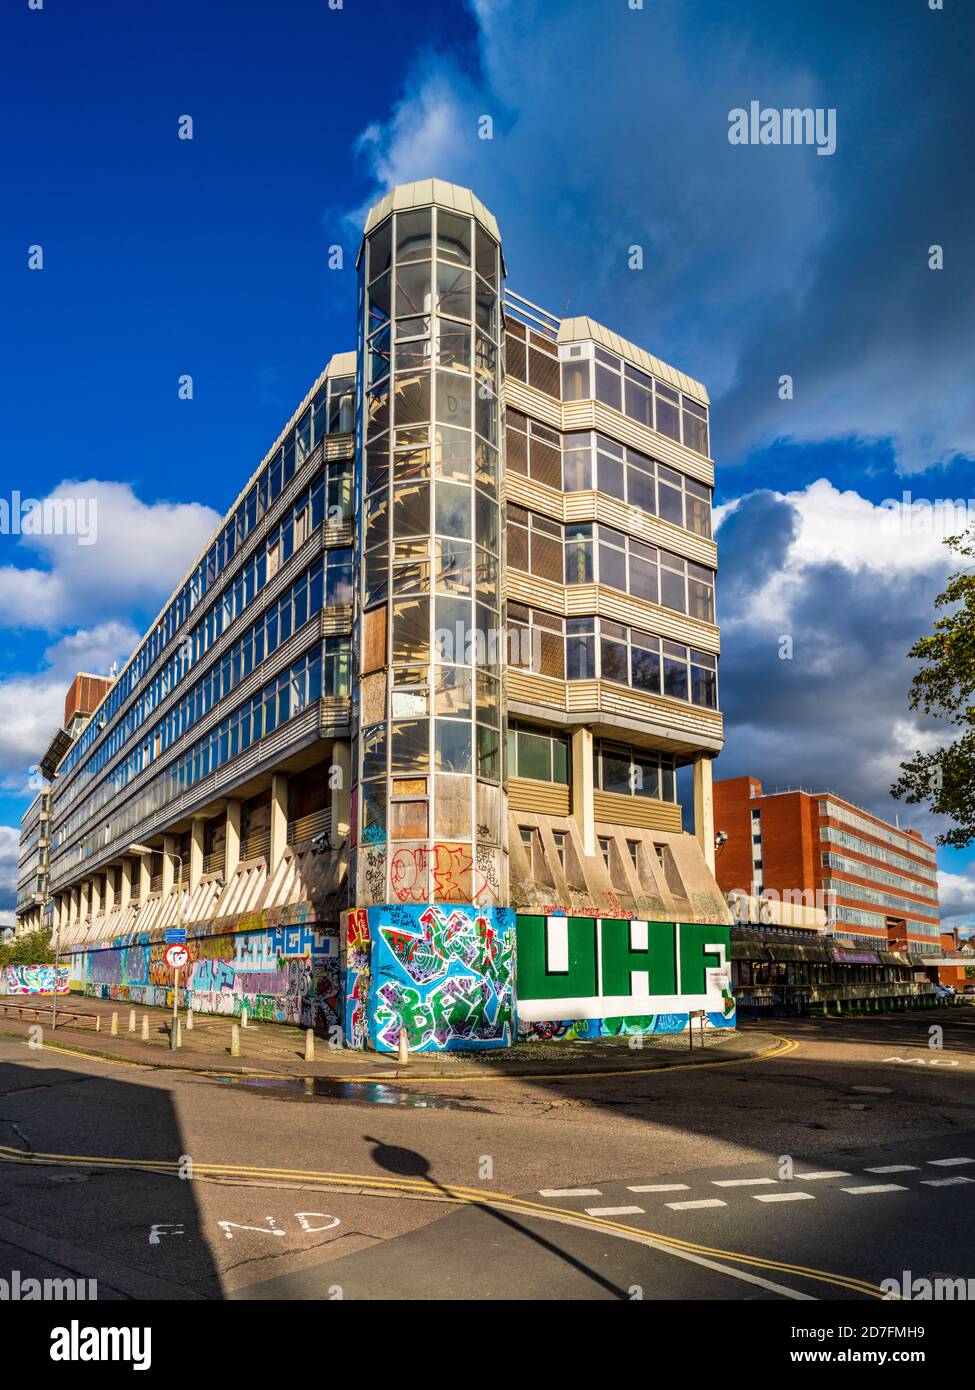 Maison souveraine à Norwich Anglia Square (architectes Alan Cooke Associates, 1966-1968) - Bâtiment de style brutaliste anciennement immobilier HM Stationery Office Banque D'Images